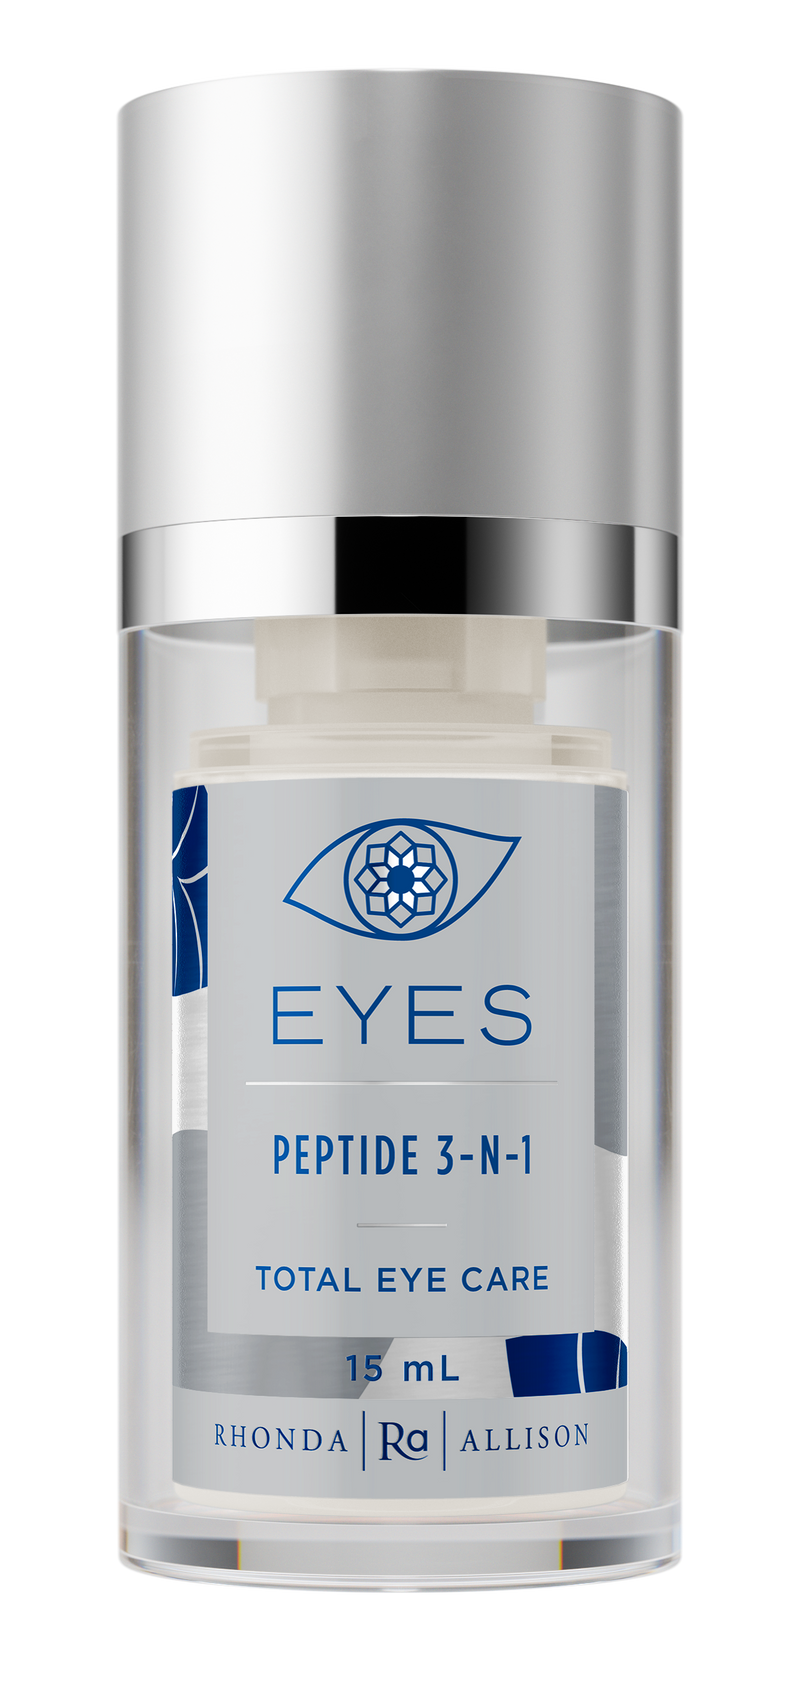 Peptide 3-N-1 Eye Cream